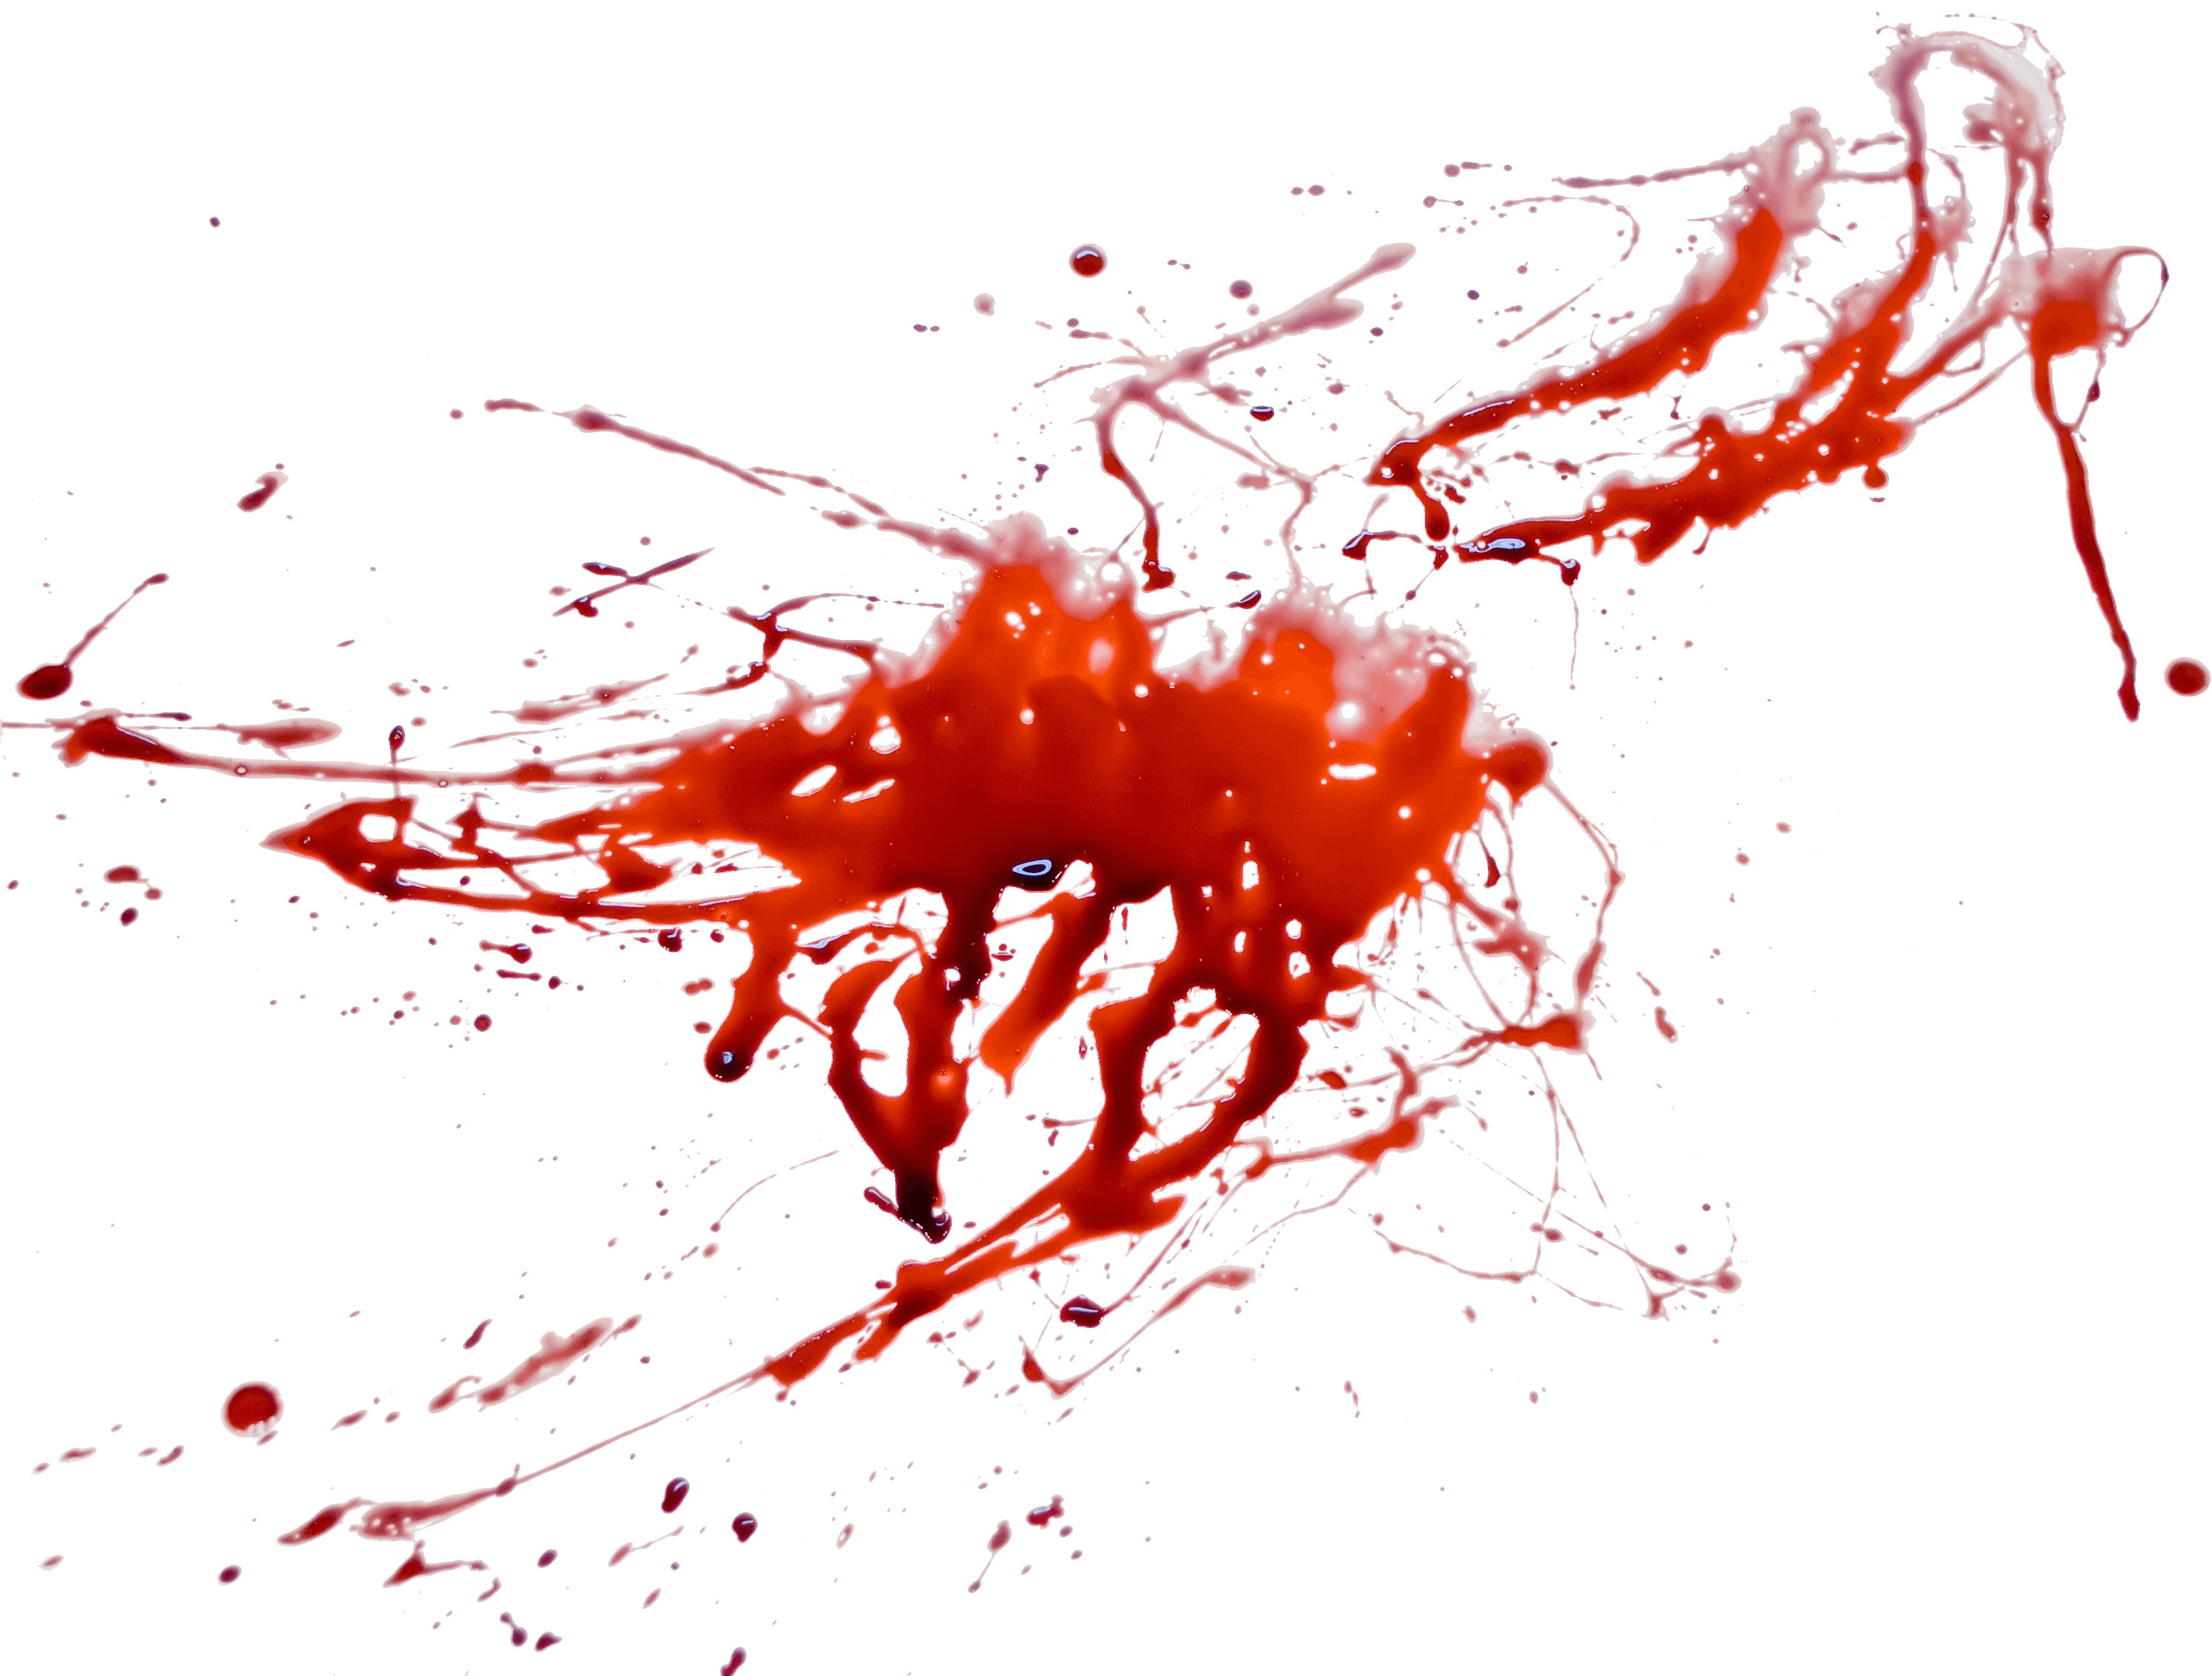 Blood Red Smoke Transparent Image | PNG Arts